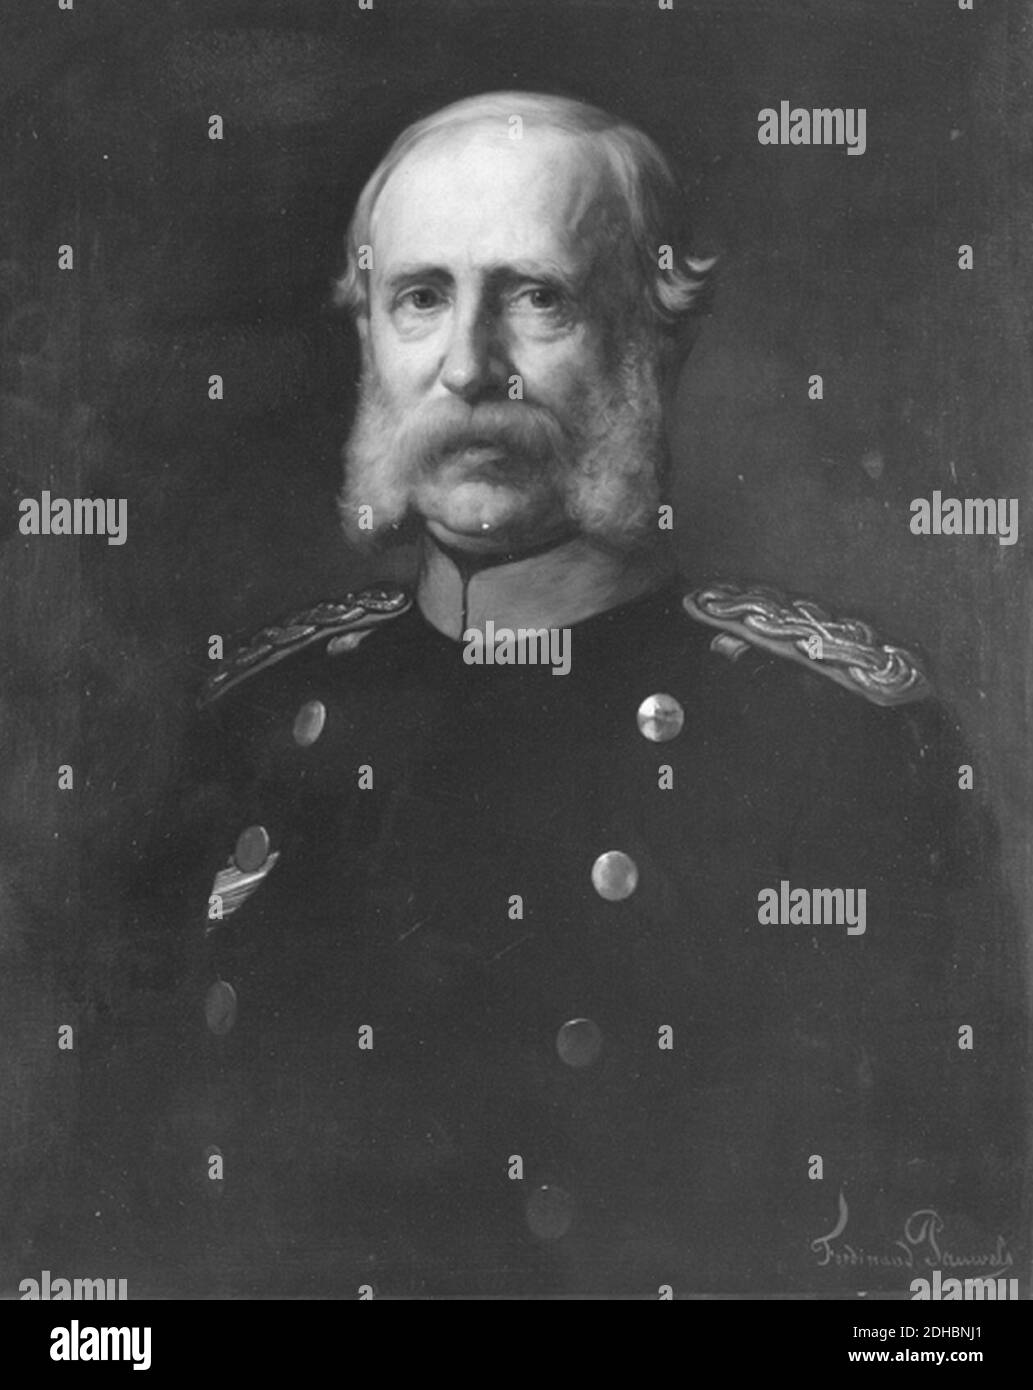 König Albert von Sachsen (Porträt). Stock Photo